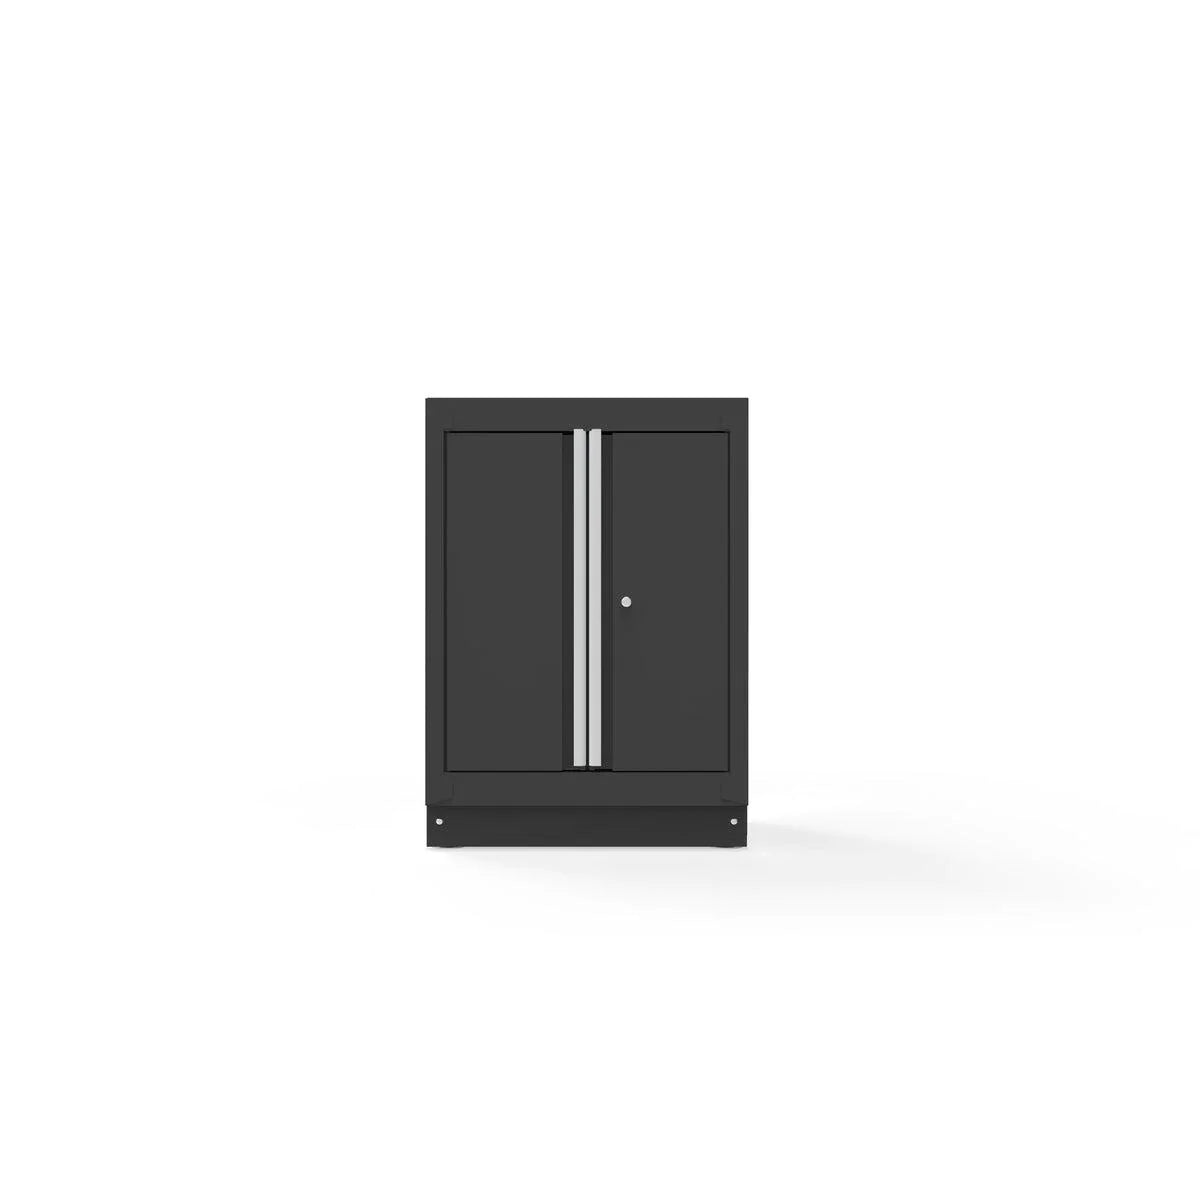 26" Double-Door Closet with Aluminum Handle, Dark Grey